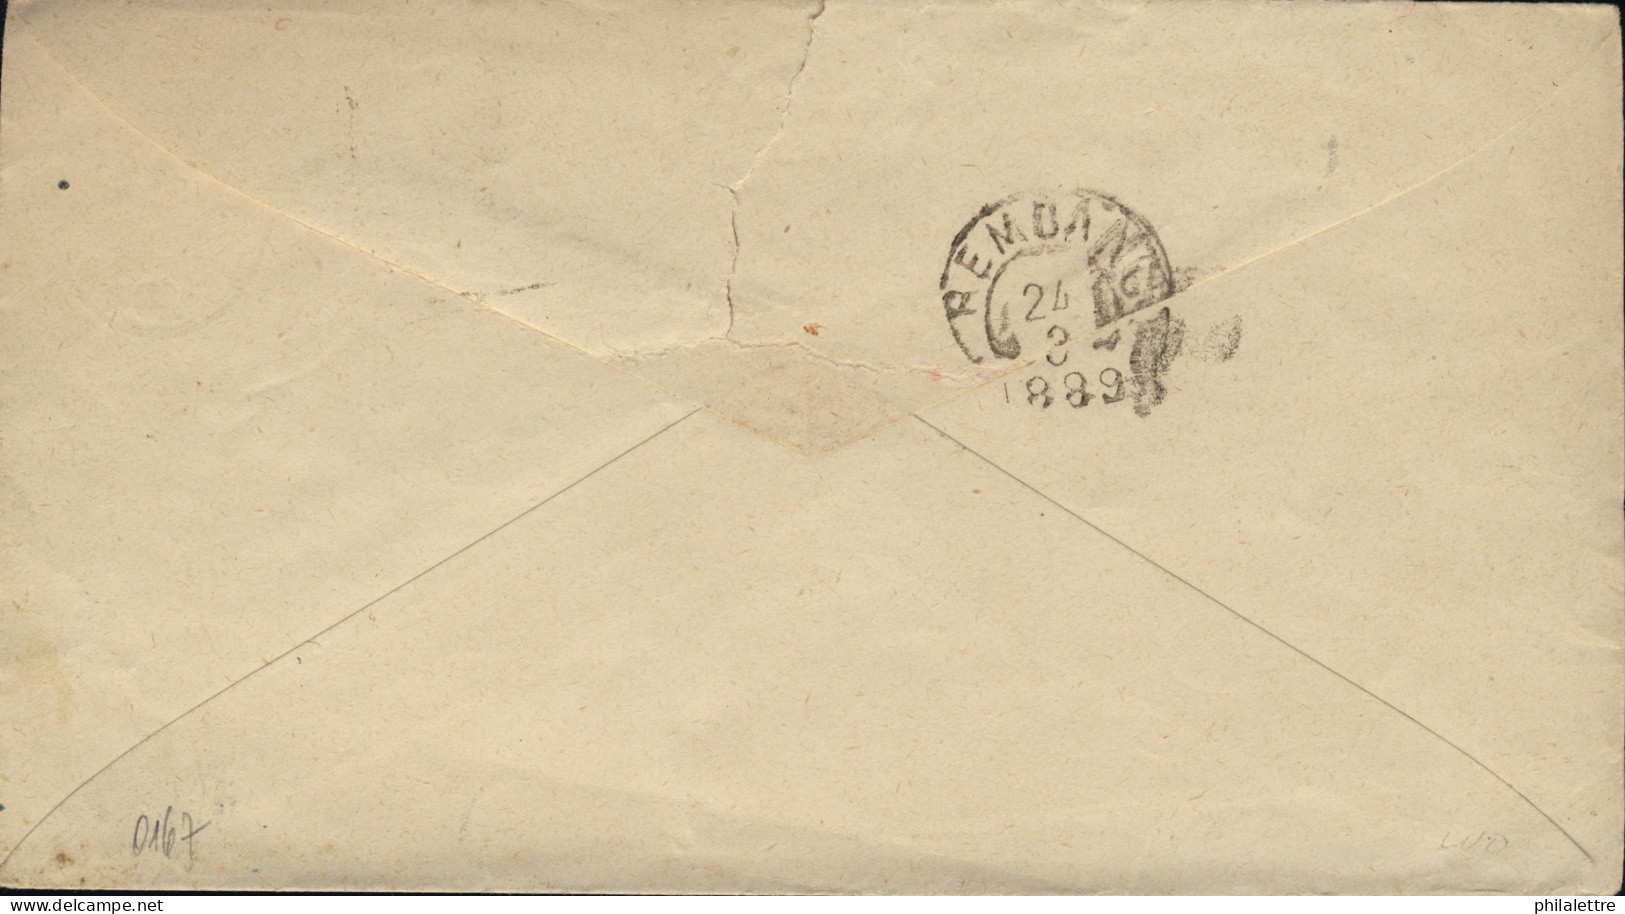 NED. INDIE / DUTCH INDIES / INDES NÉERLANDAISES - 1889 10c Postal Envelope Used From SEMARANG To REMBANG - Netherlands Indies